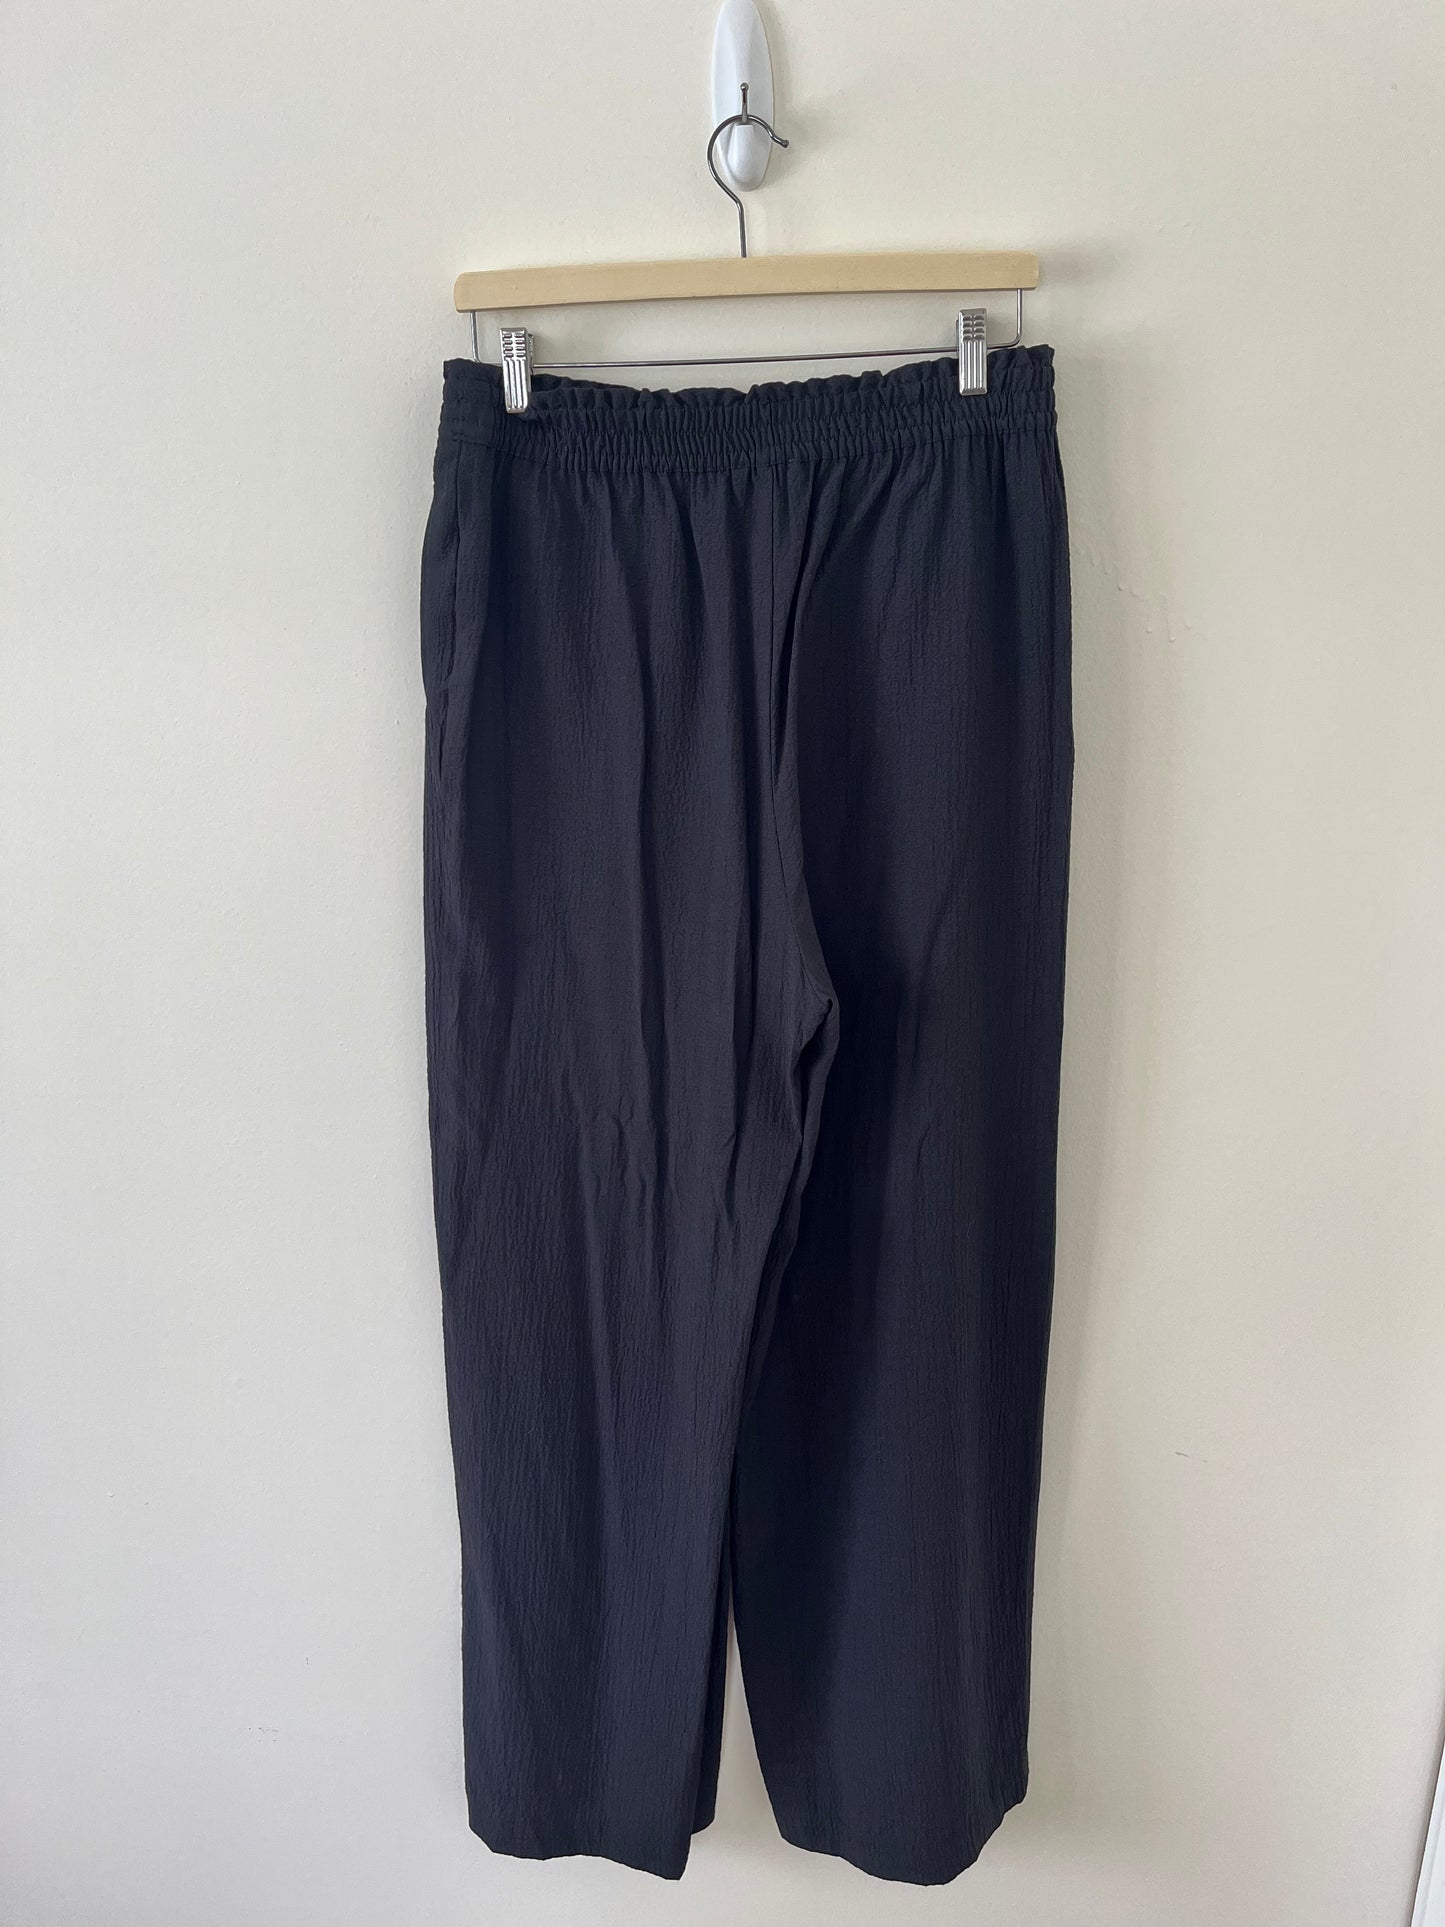 Calvin Klein Black Long Lightweight Textured Pants (M-L)